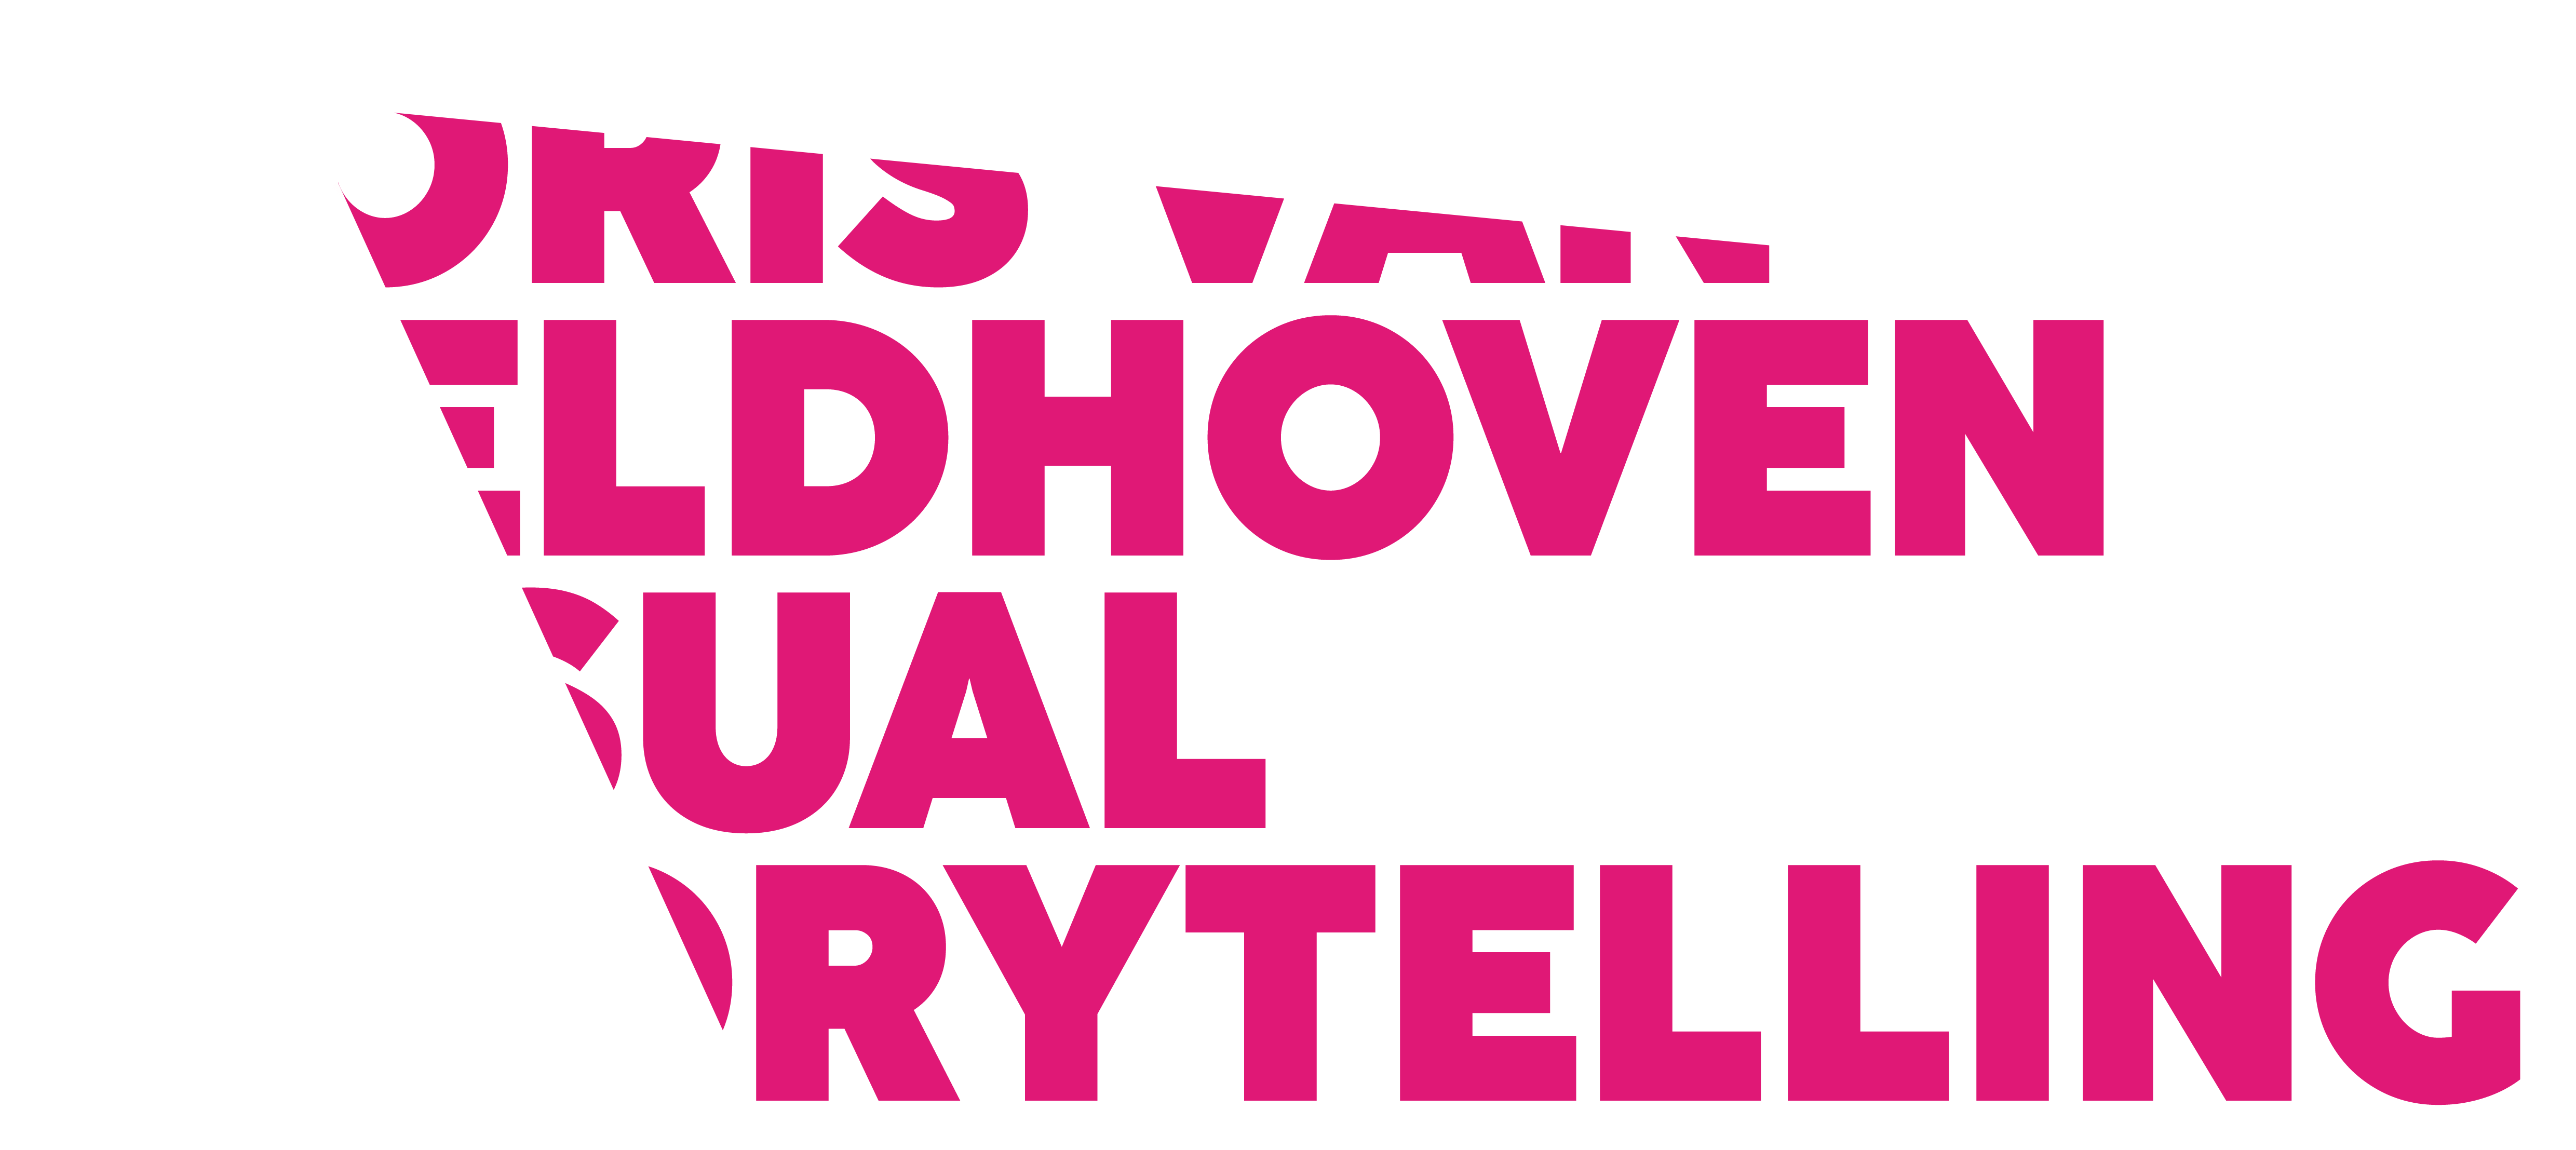 JorisvanVeldhoven.nl